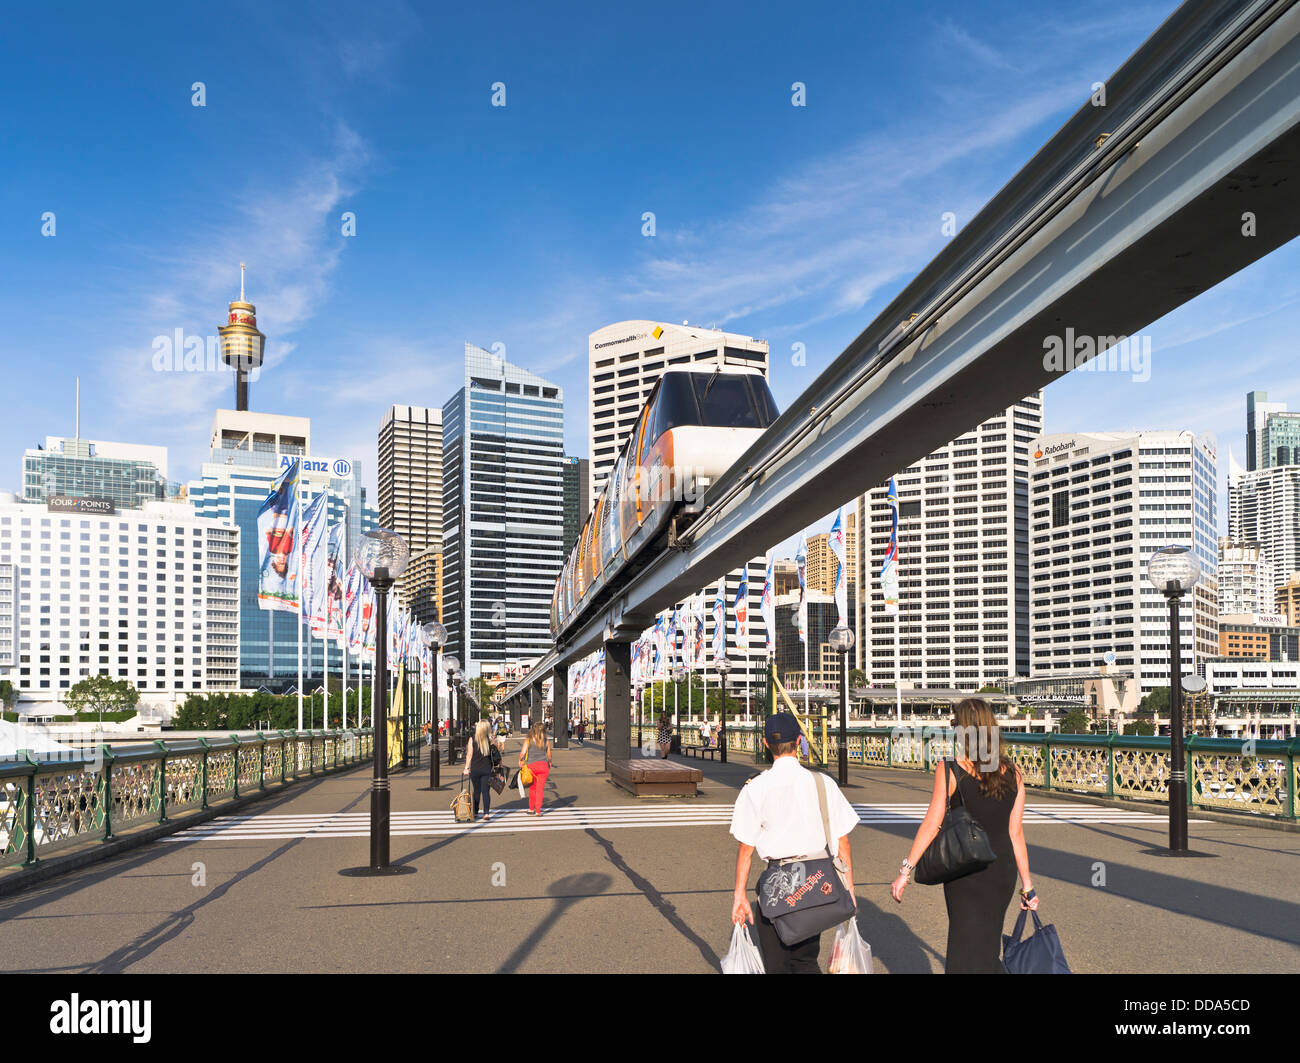 Dh de Darling Harbour à Sydney Australie Sydney train monorail voie Pyrmont Bridge harbour ville gratte-ciel Banque D'Images